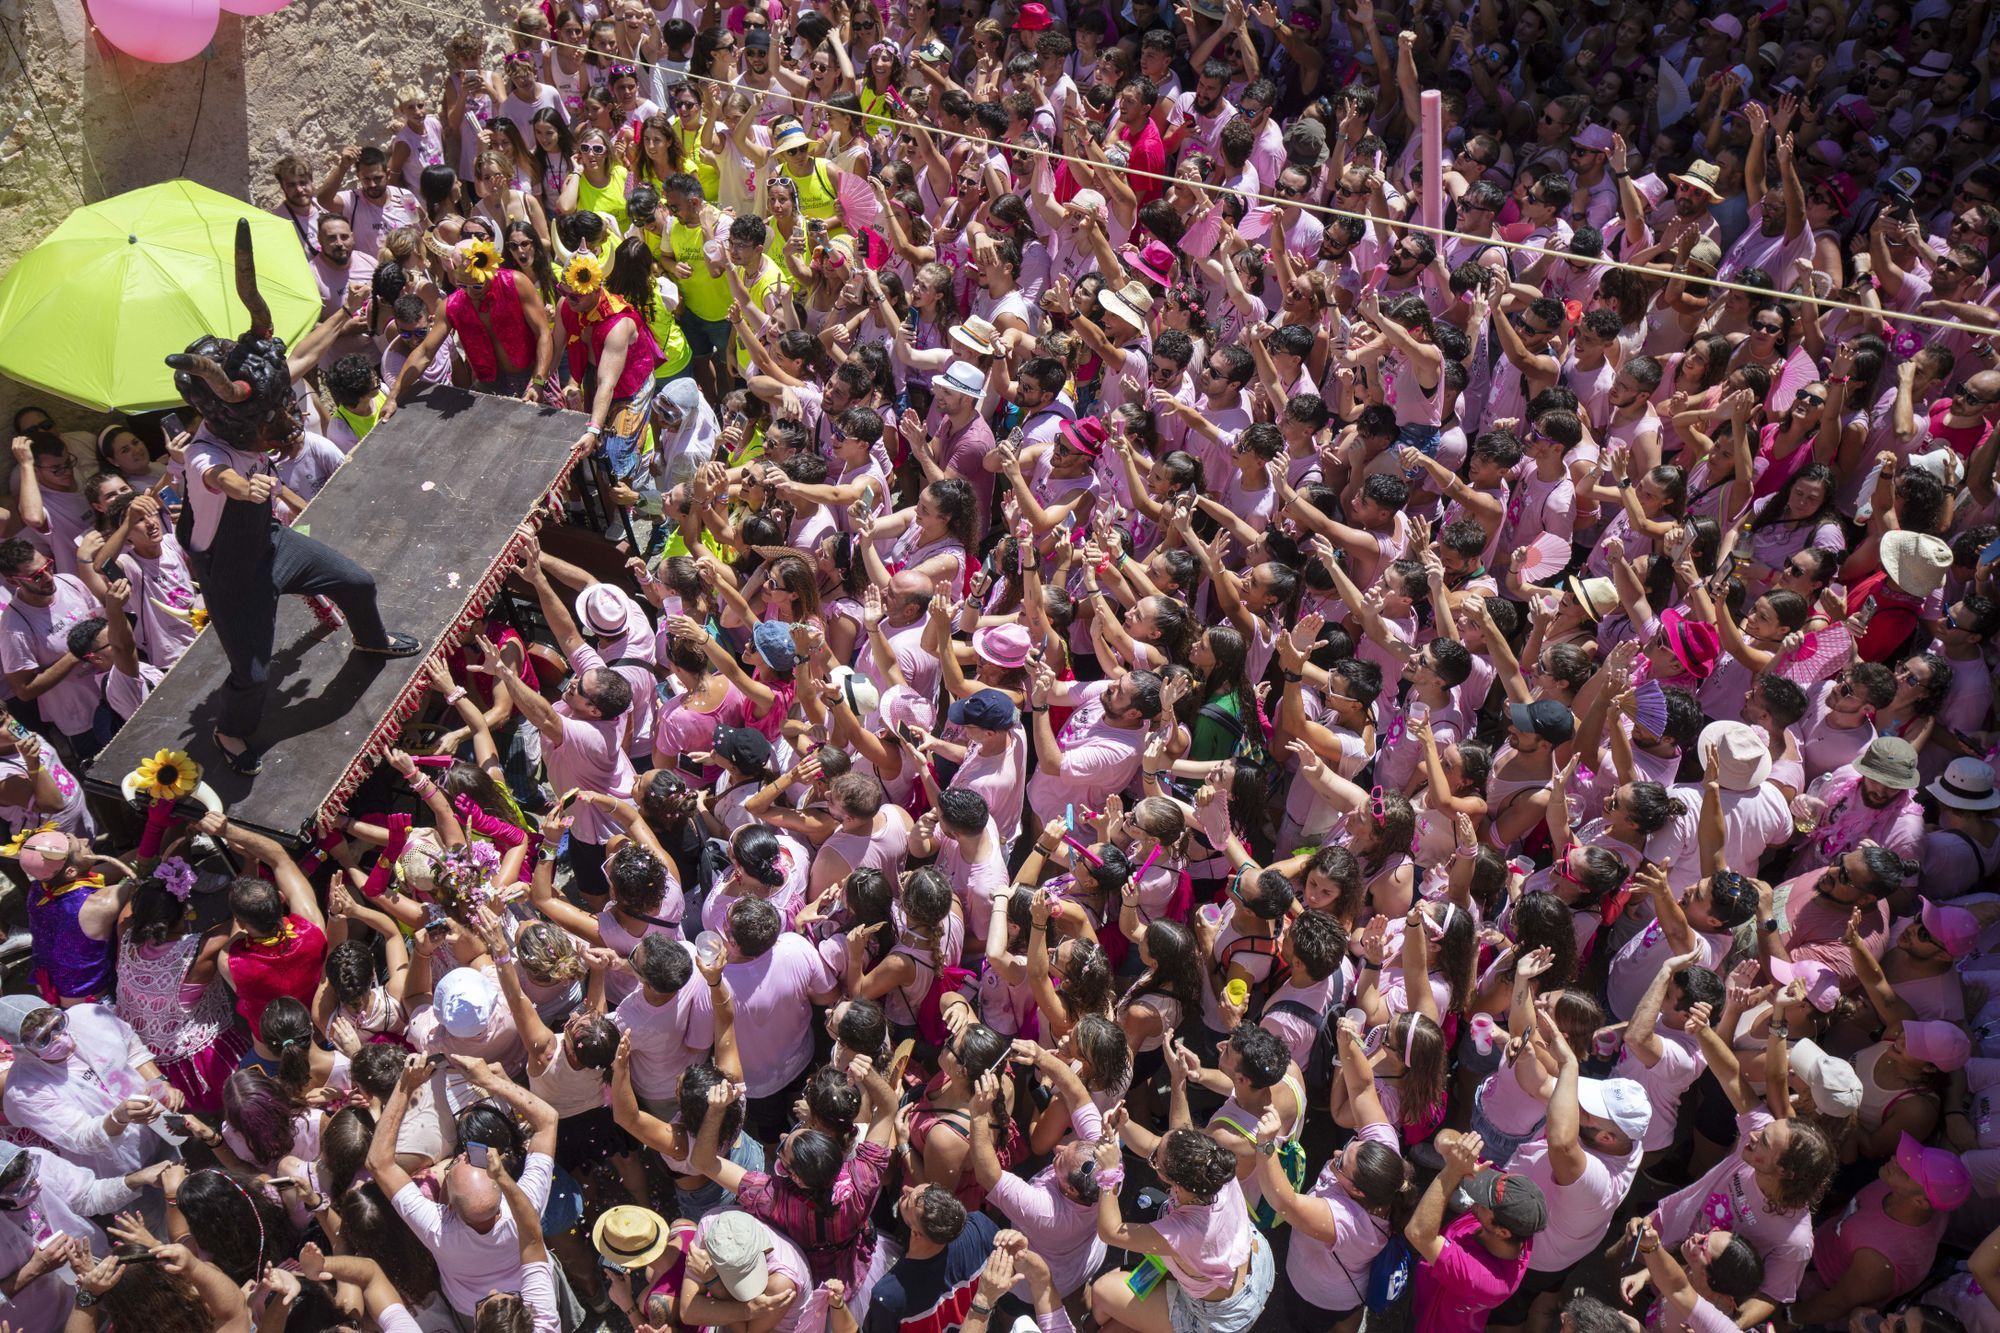 Der "Much" ist wieder da - so sieht es beim verrücktesten Dorffest von Mallorca aus